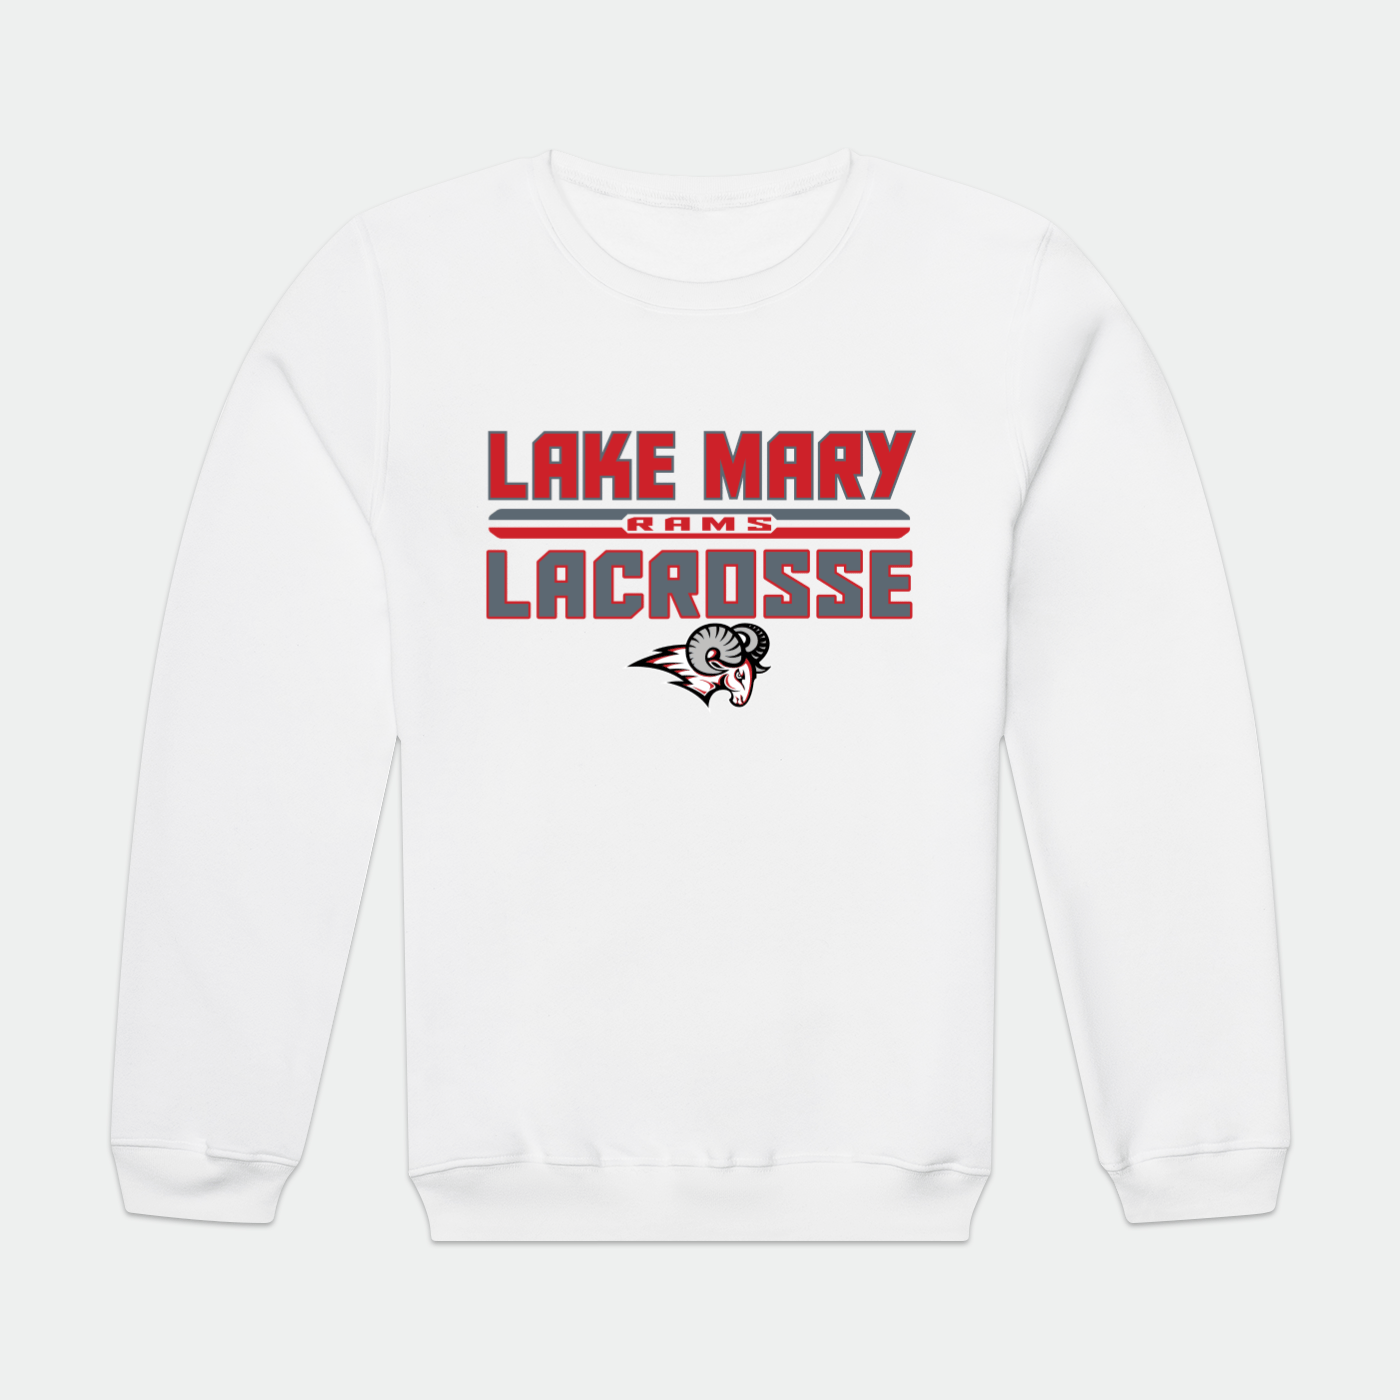 Lake Mary Lacrosse Adult Premium Sweatshirt Signature Lacrosse